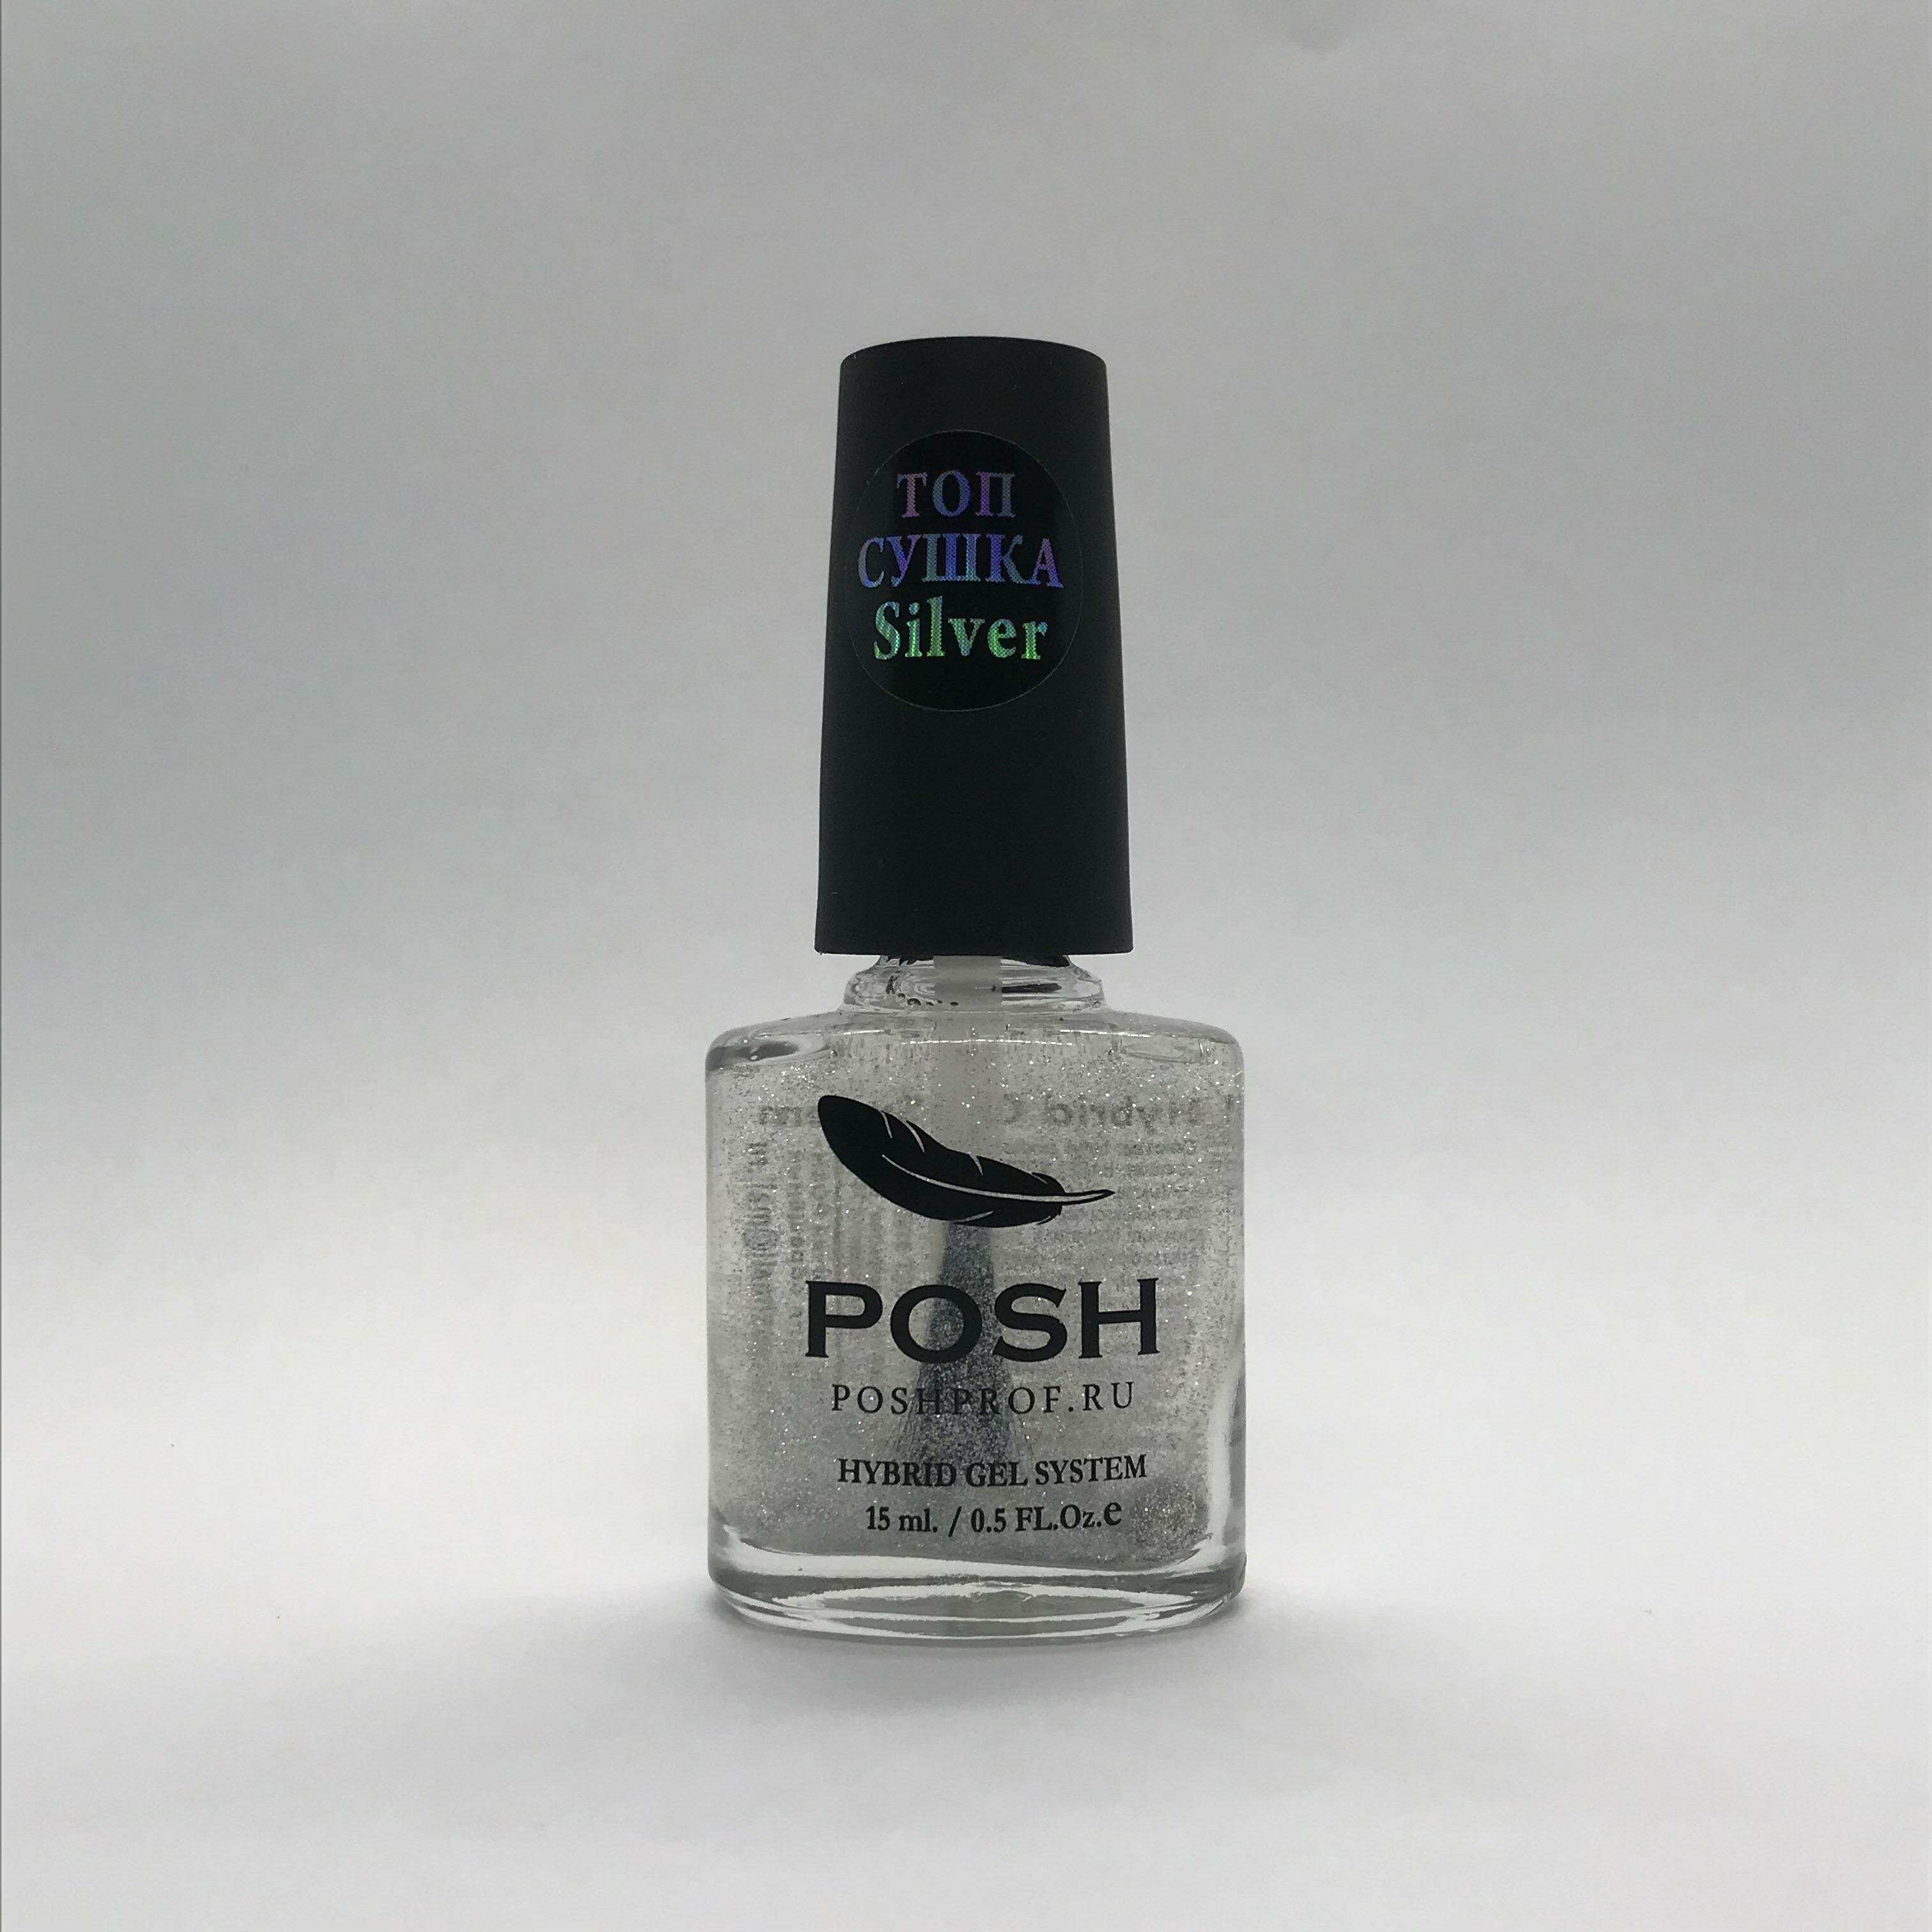 POSH Hybrid Gel System Top Silver Сушка-закрепитель для мгновенной фиксации лака на ногтях с серебрянными голографическими частицами 15 мл